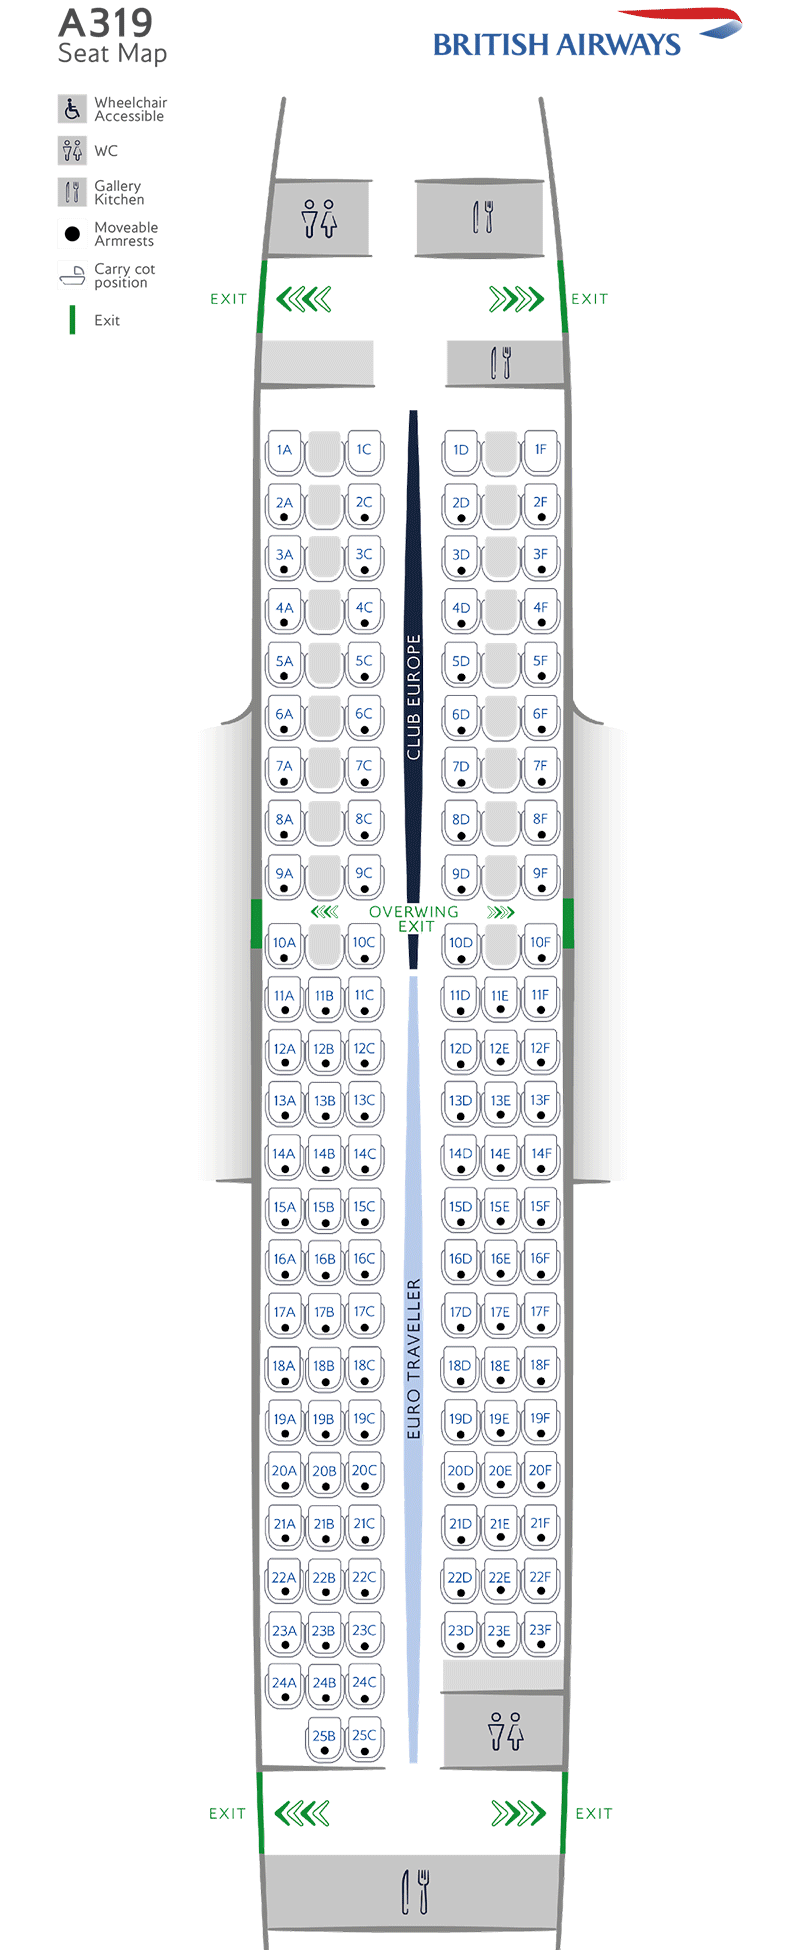 Configurazione dei posti A319-131